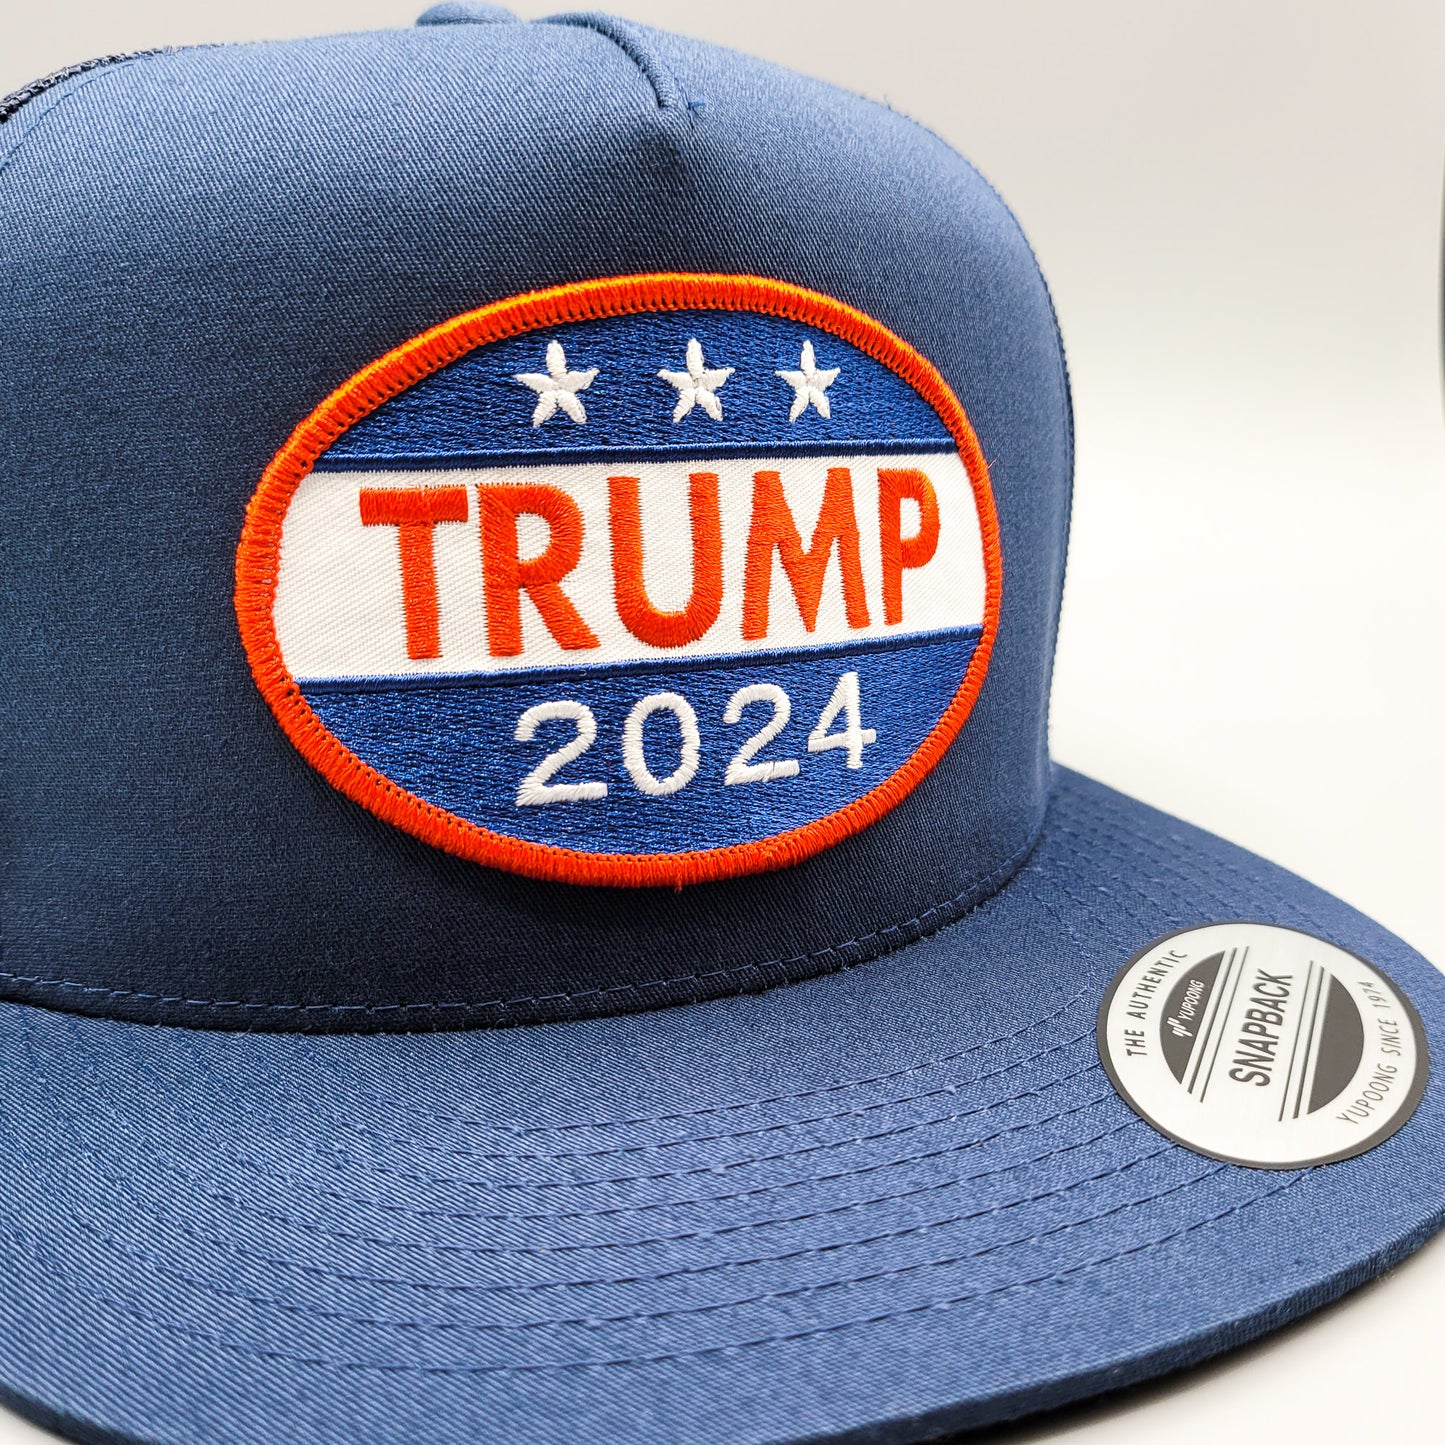 Trump 2024 Election Campaign Trucker